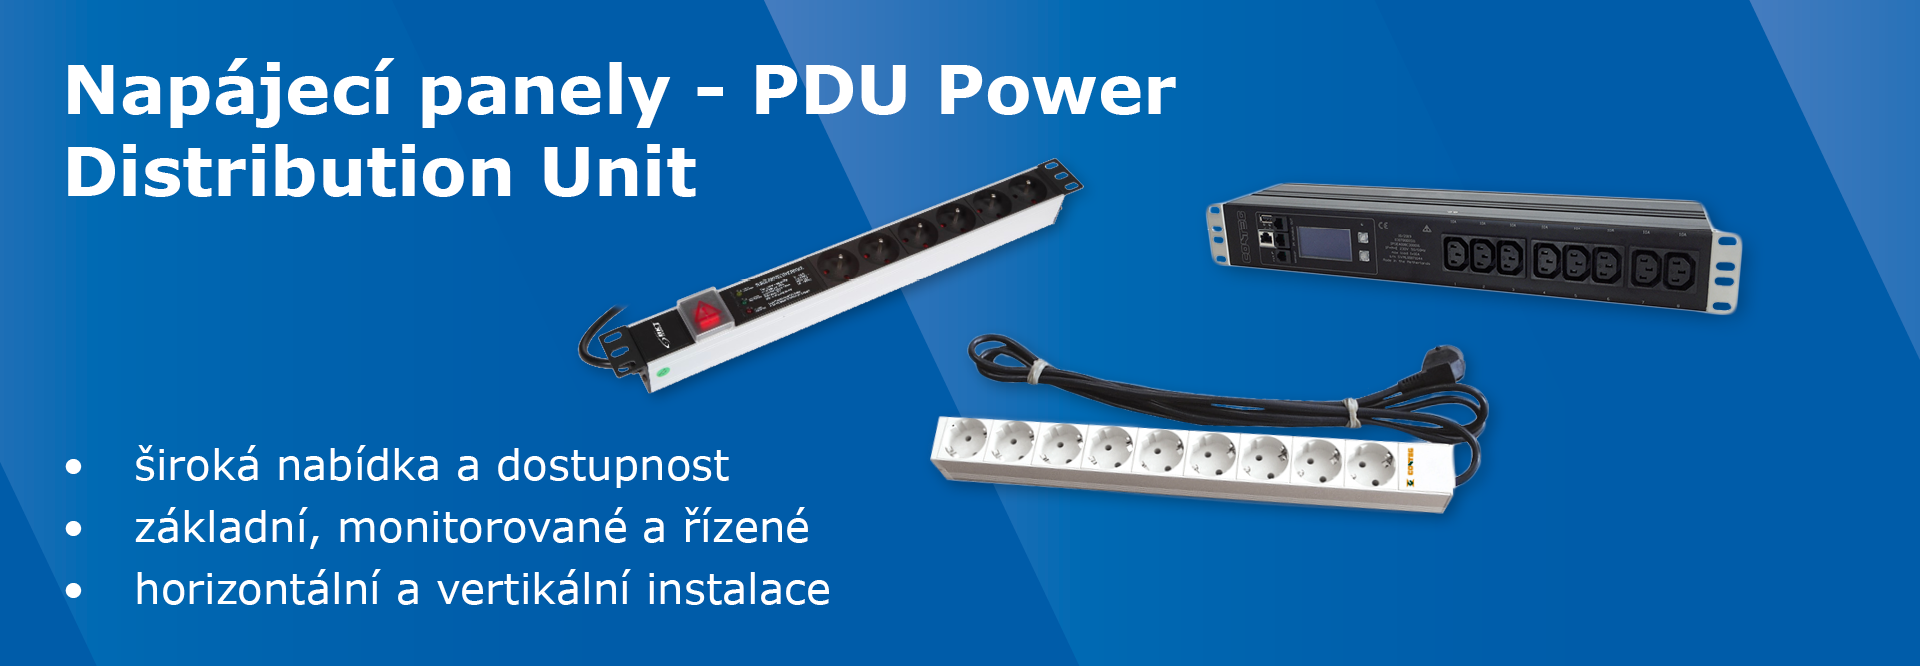 PDU Power Distribution Unit